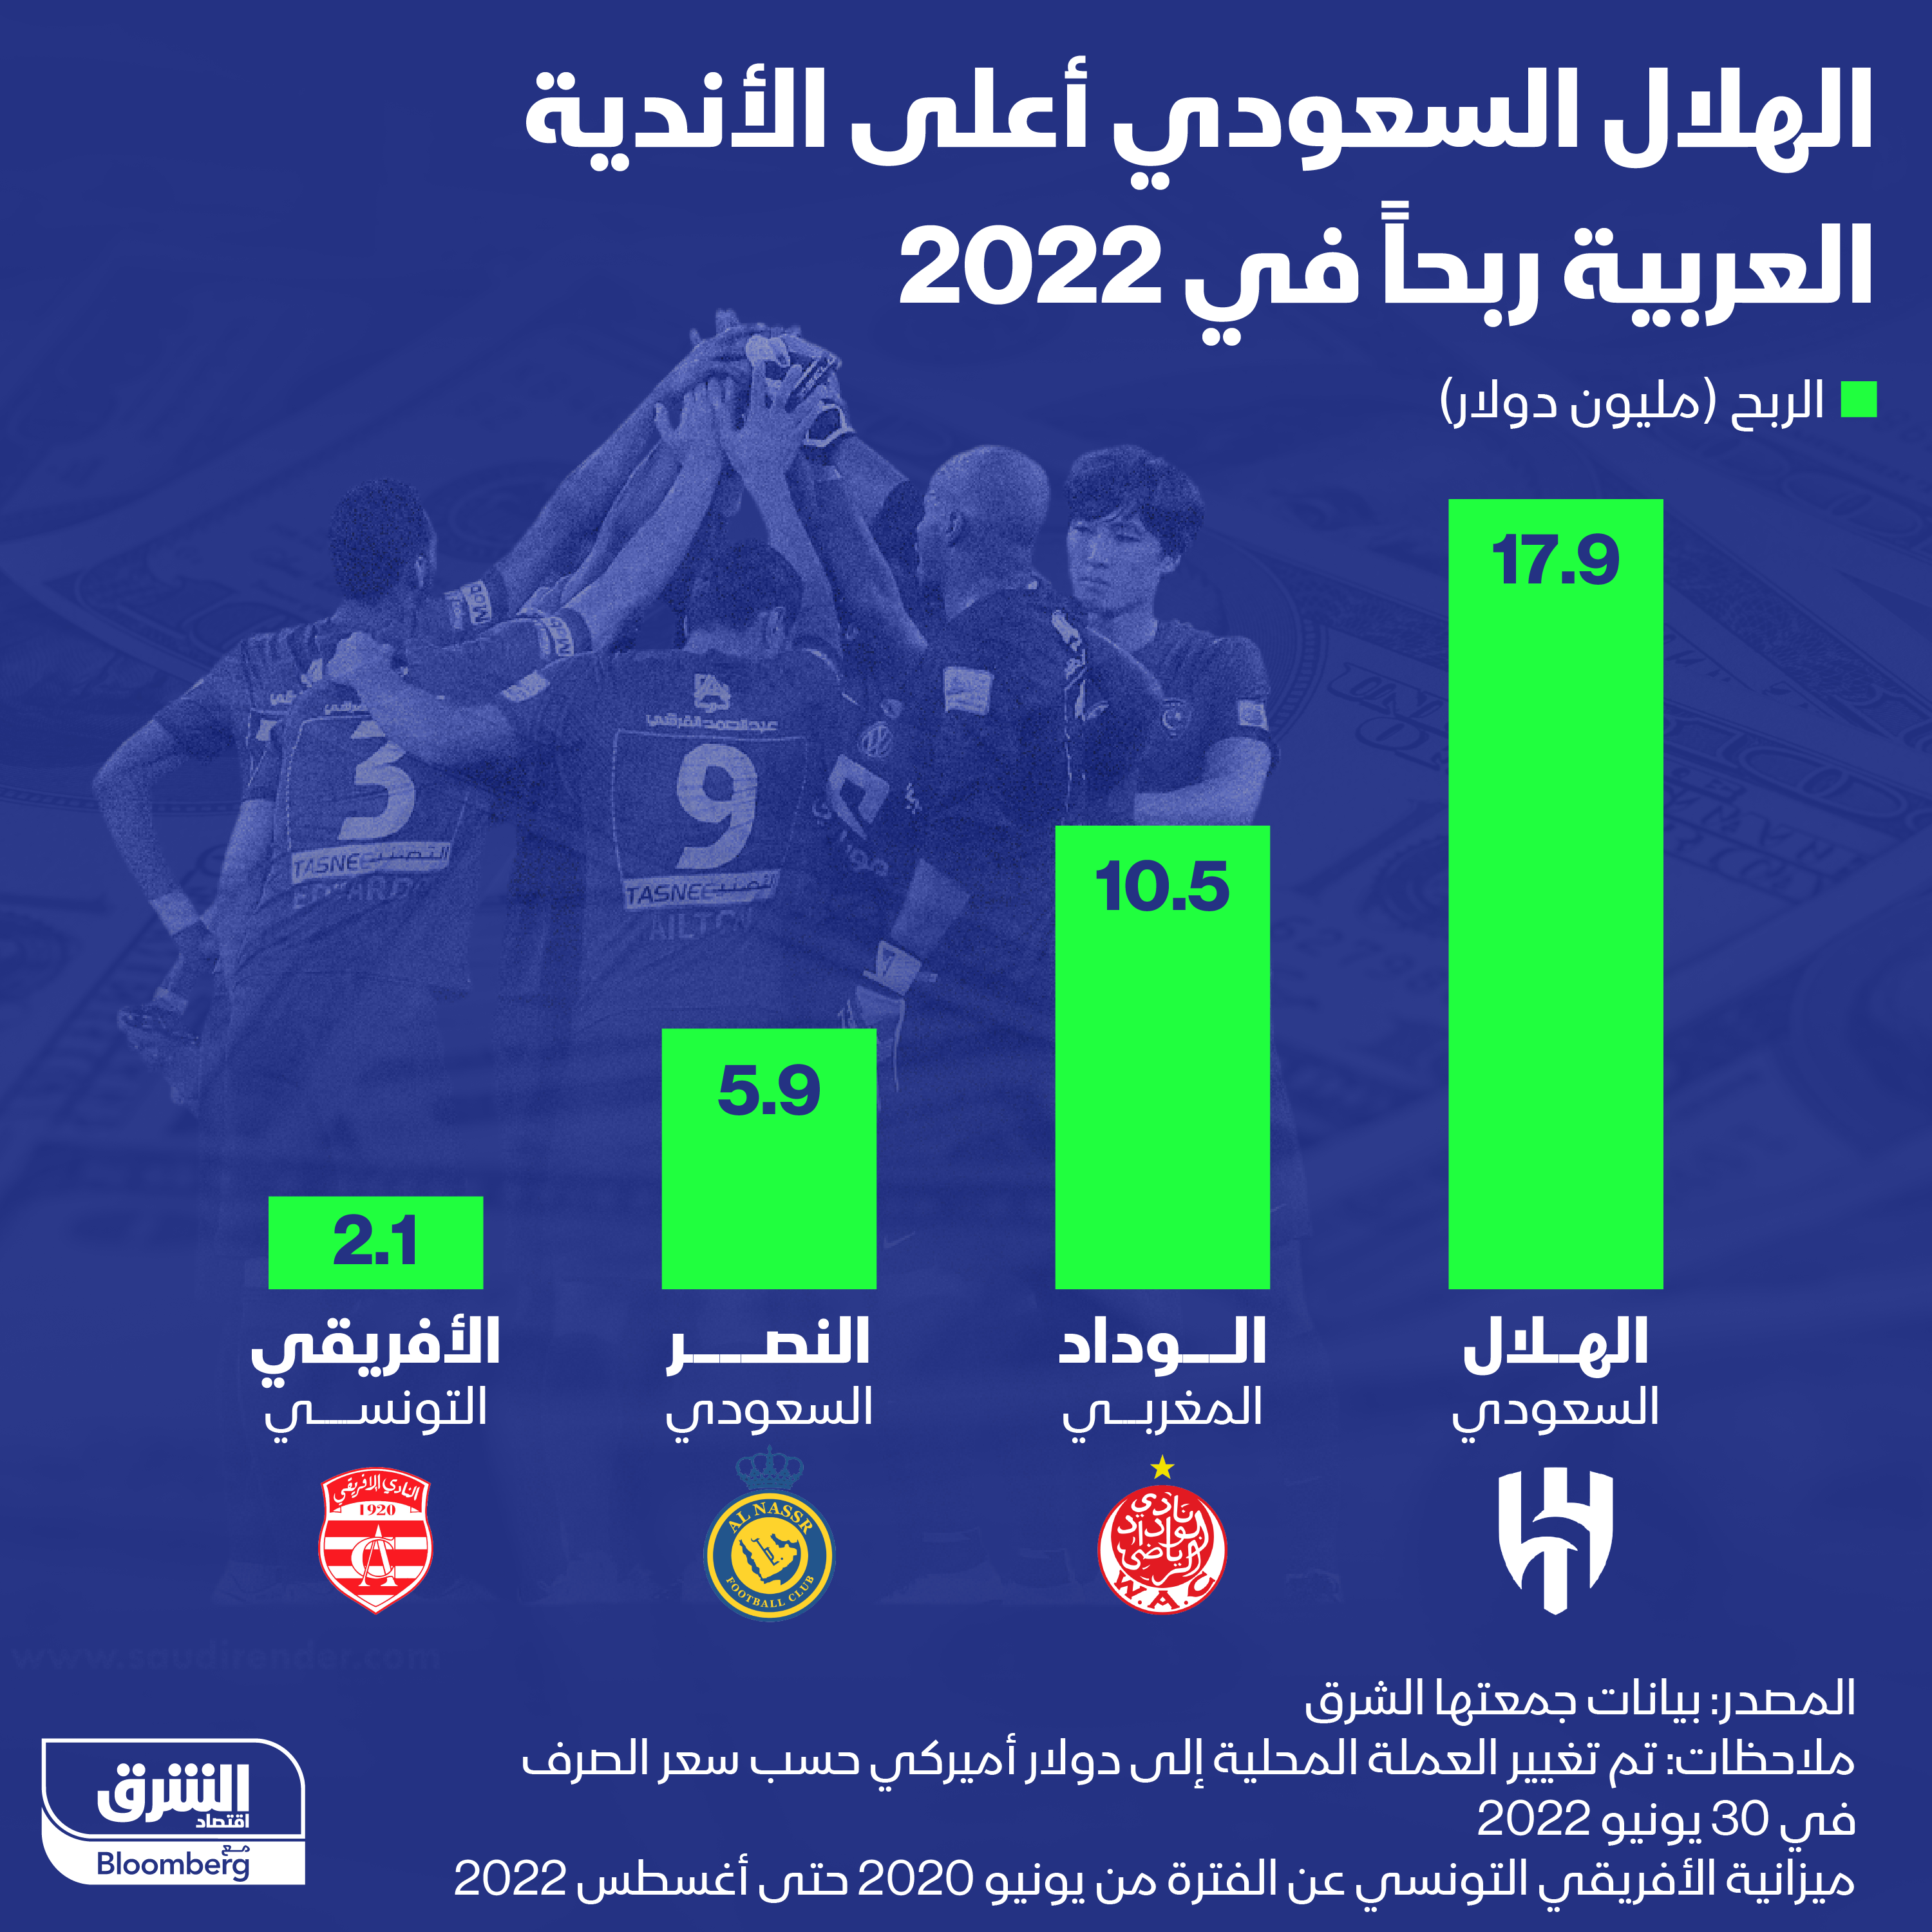 الهلال السعودي تصدّر الأندية العربية في تحقيق الأرباح